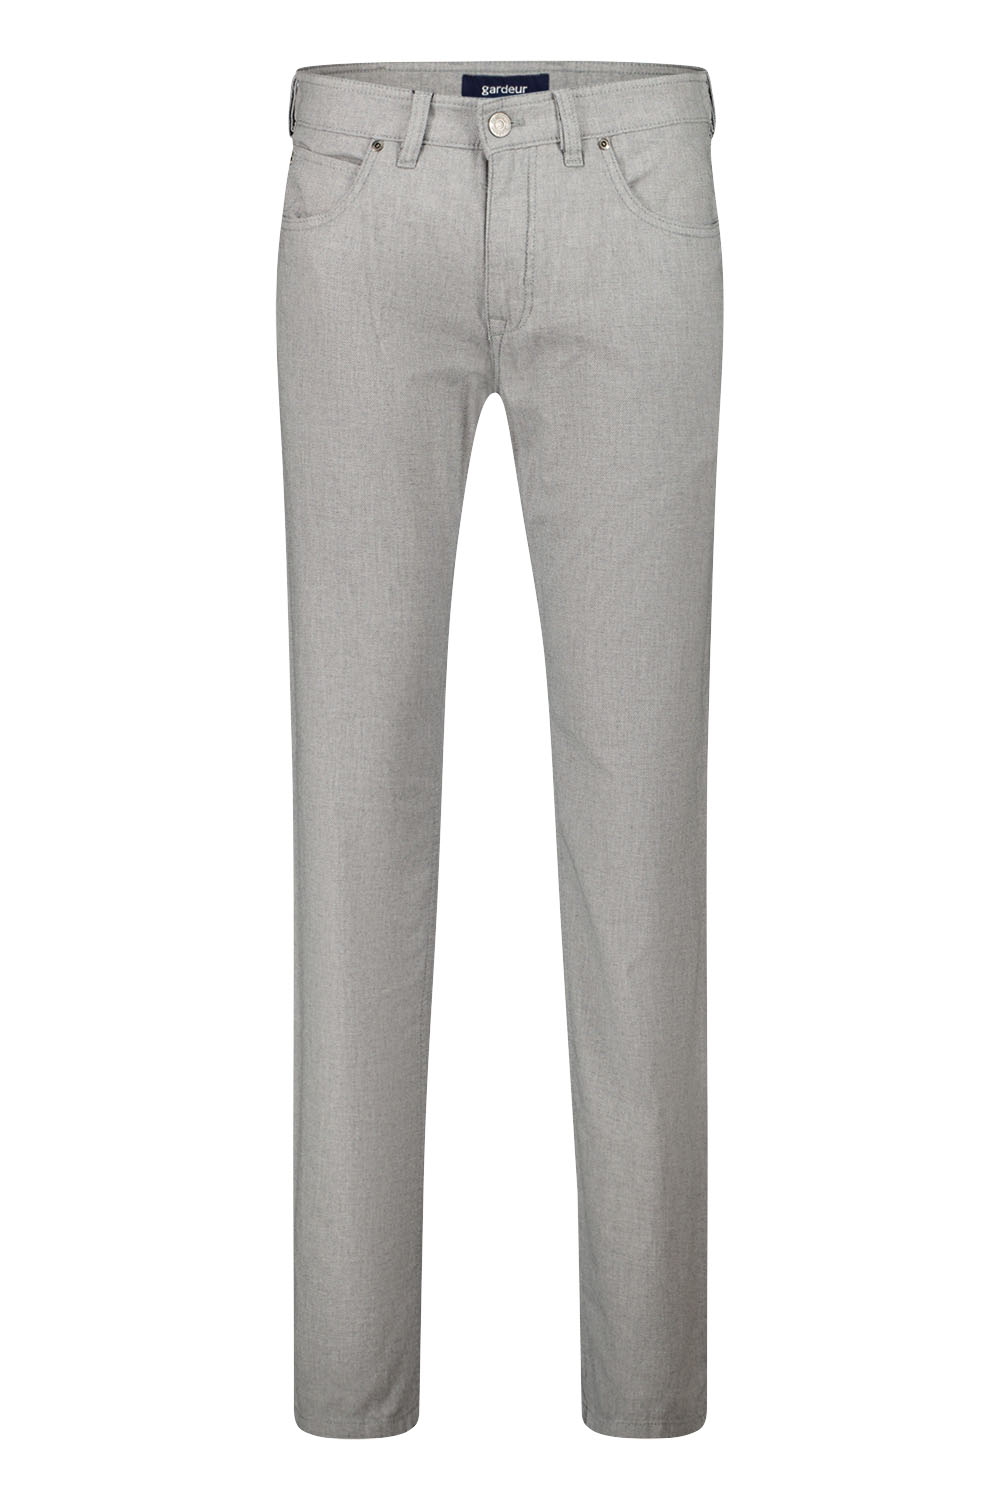 Gardeur - Bill-3 Modern Fit 5-Pocket Jeans Grijs - 38/34 - Heren